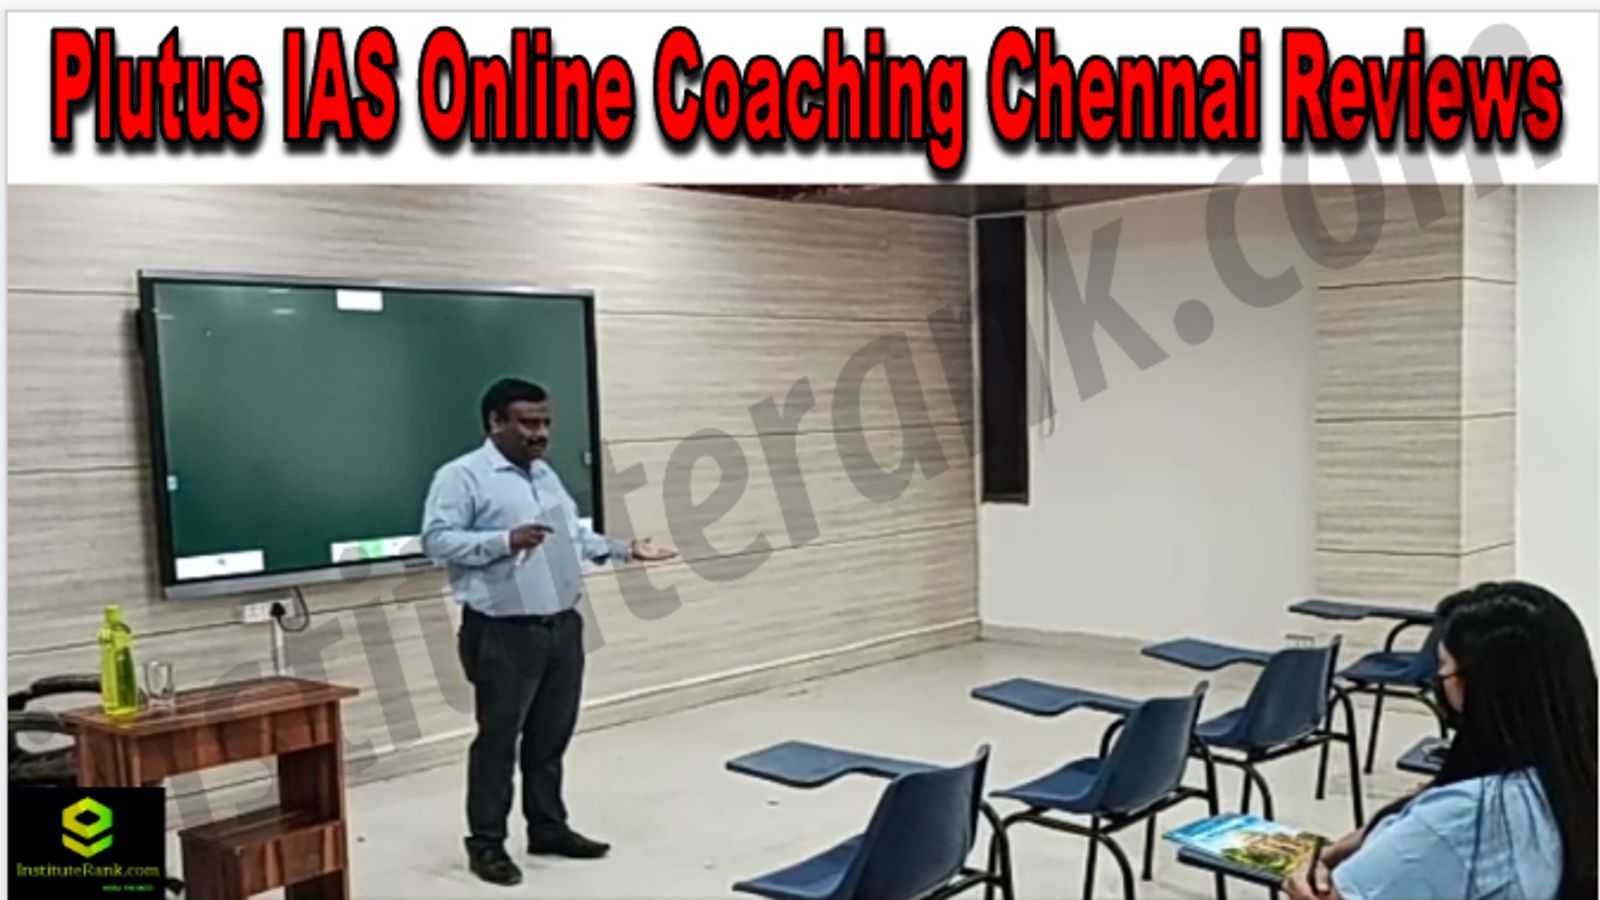 Plutus IAS Online Coaching Chennai Reviews